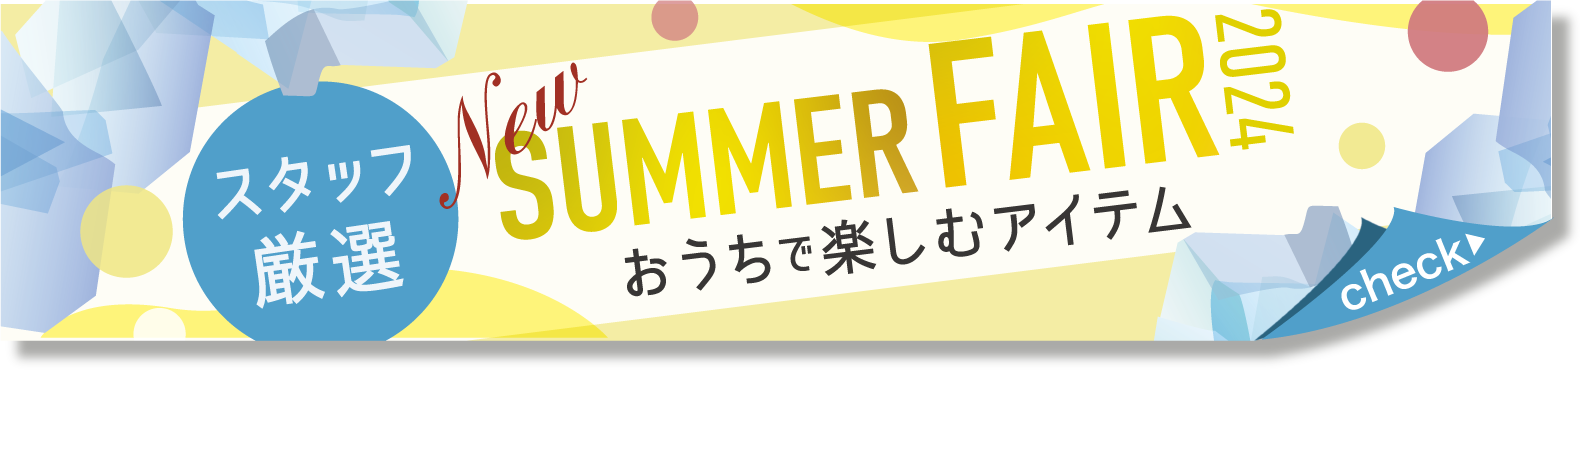 (日本語) SUMMER-FAIR_pickup